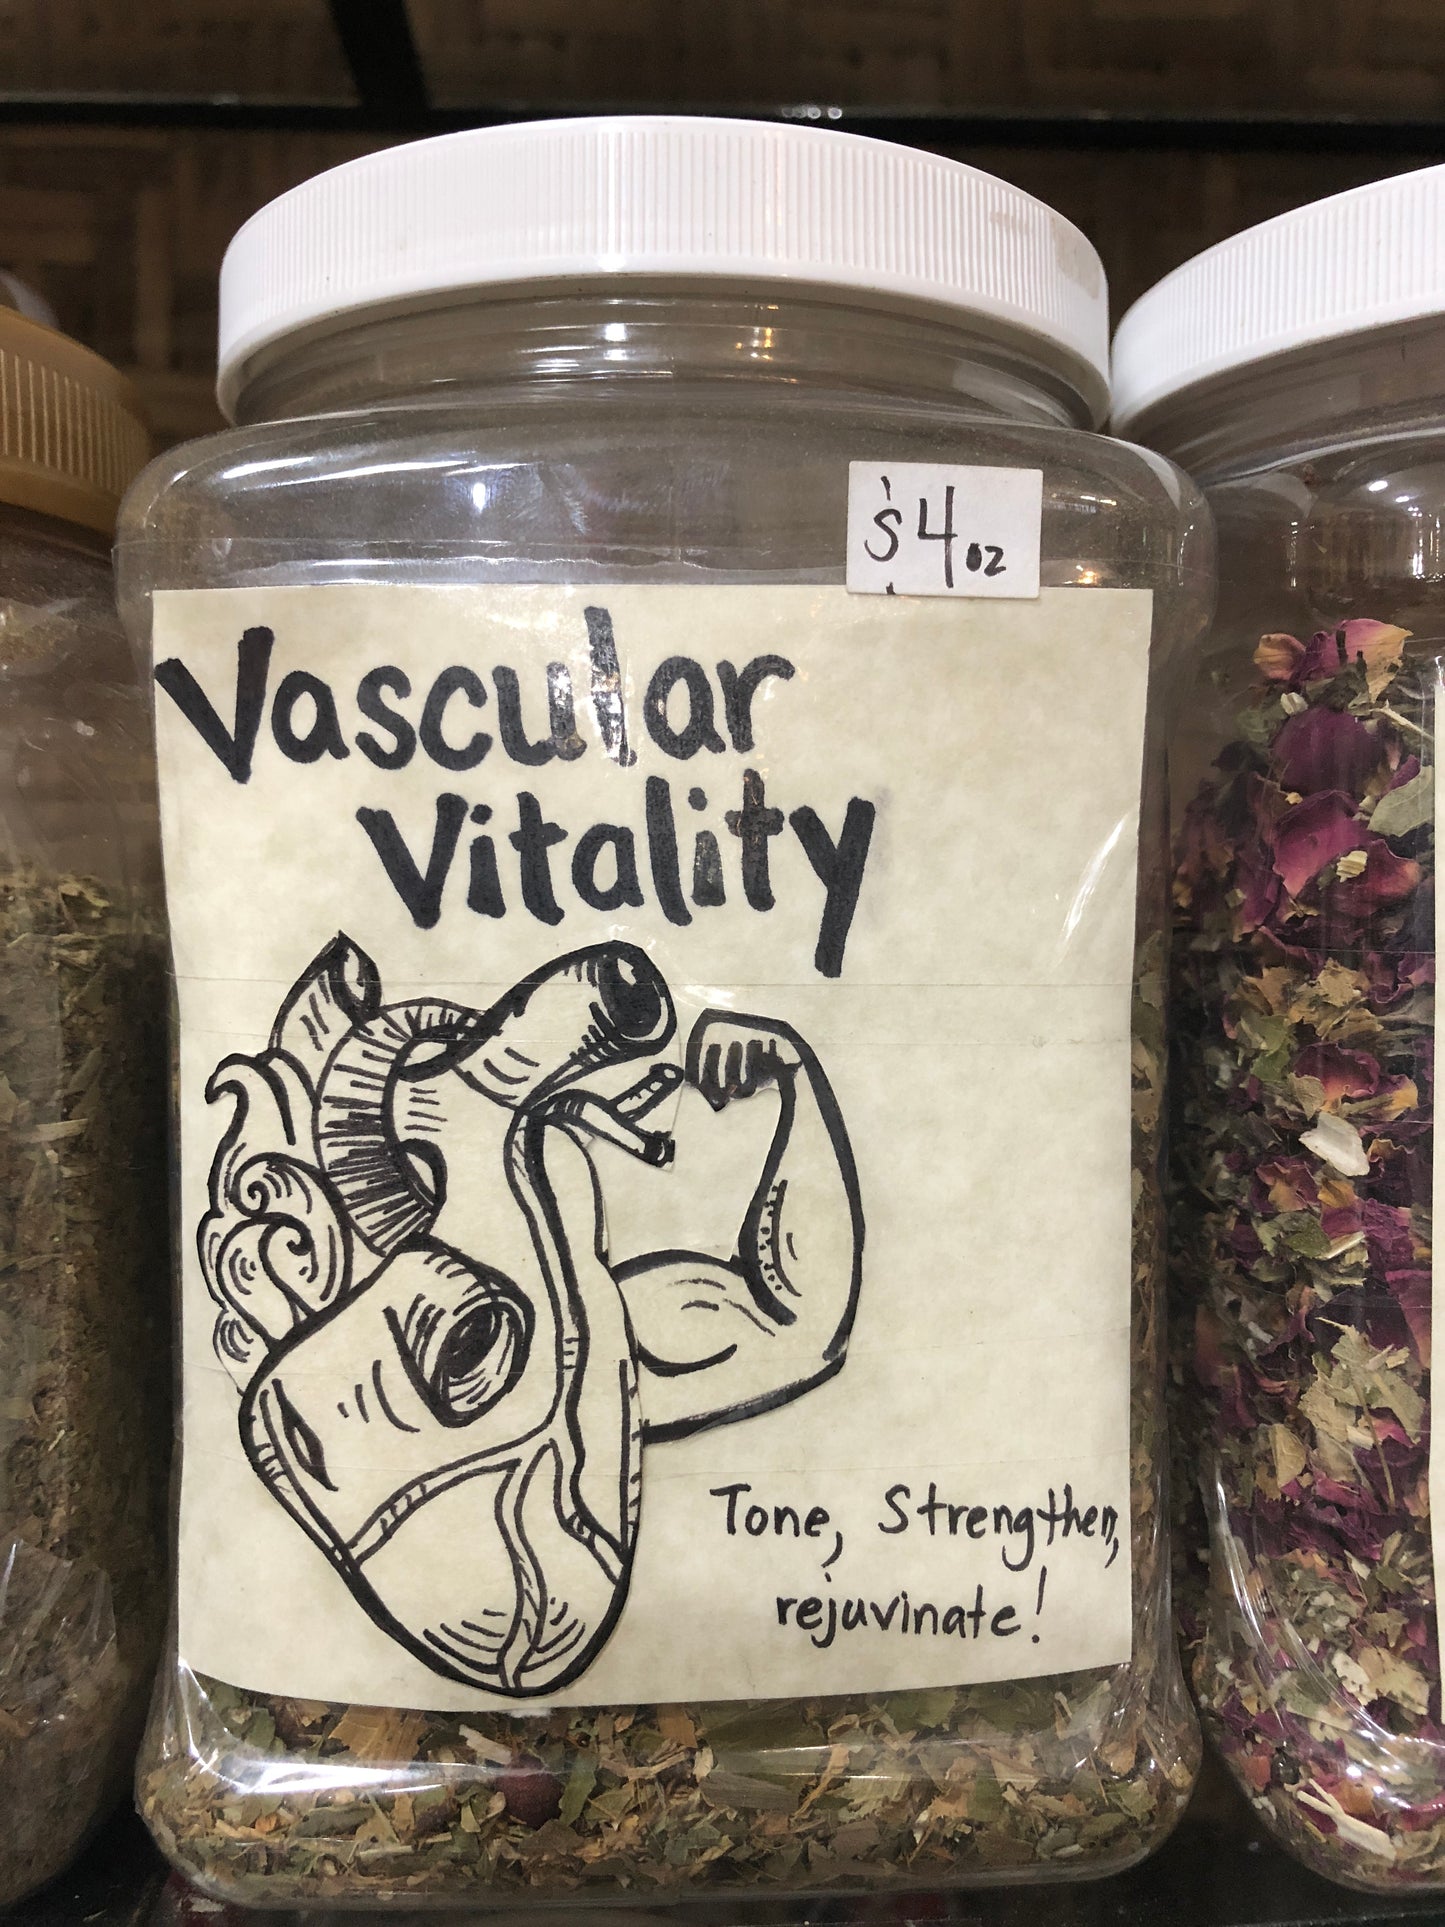 Vascular Vitality